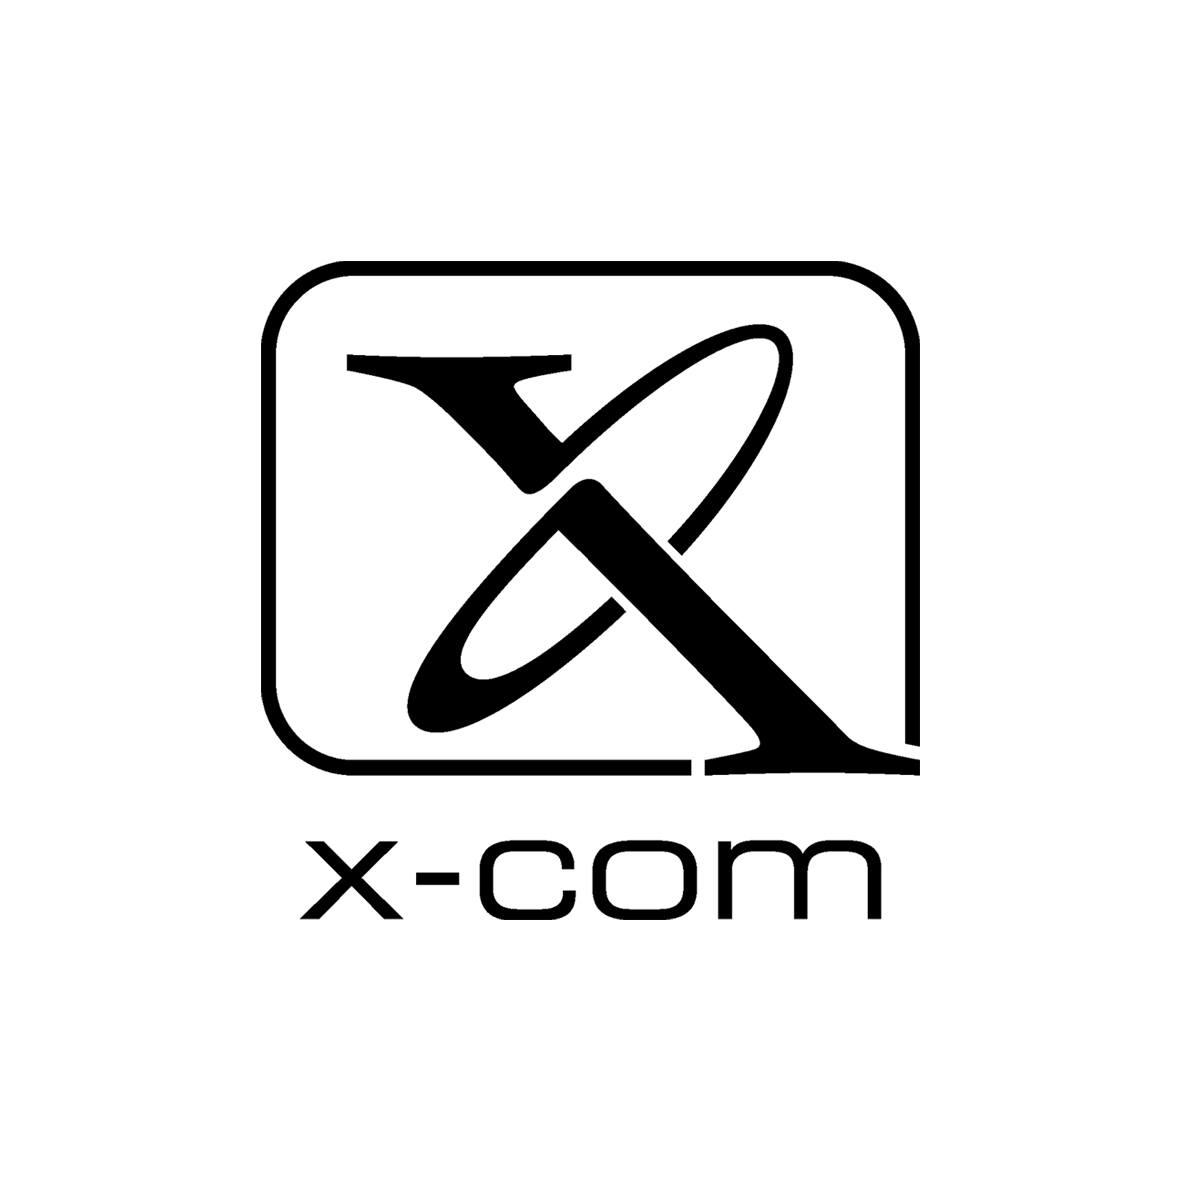 X-com